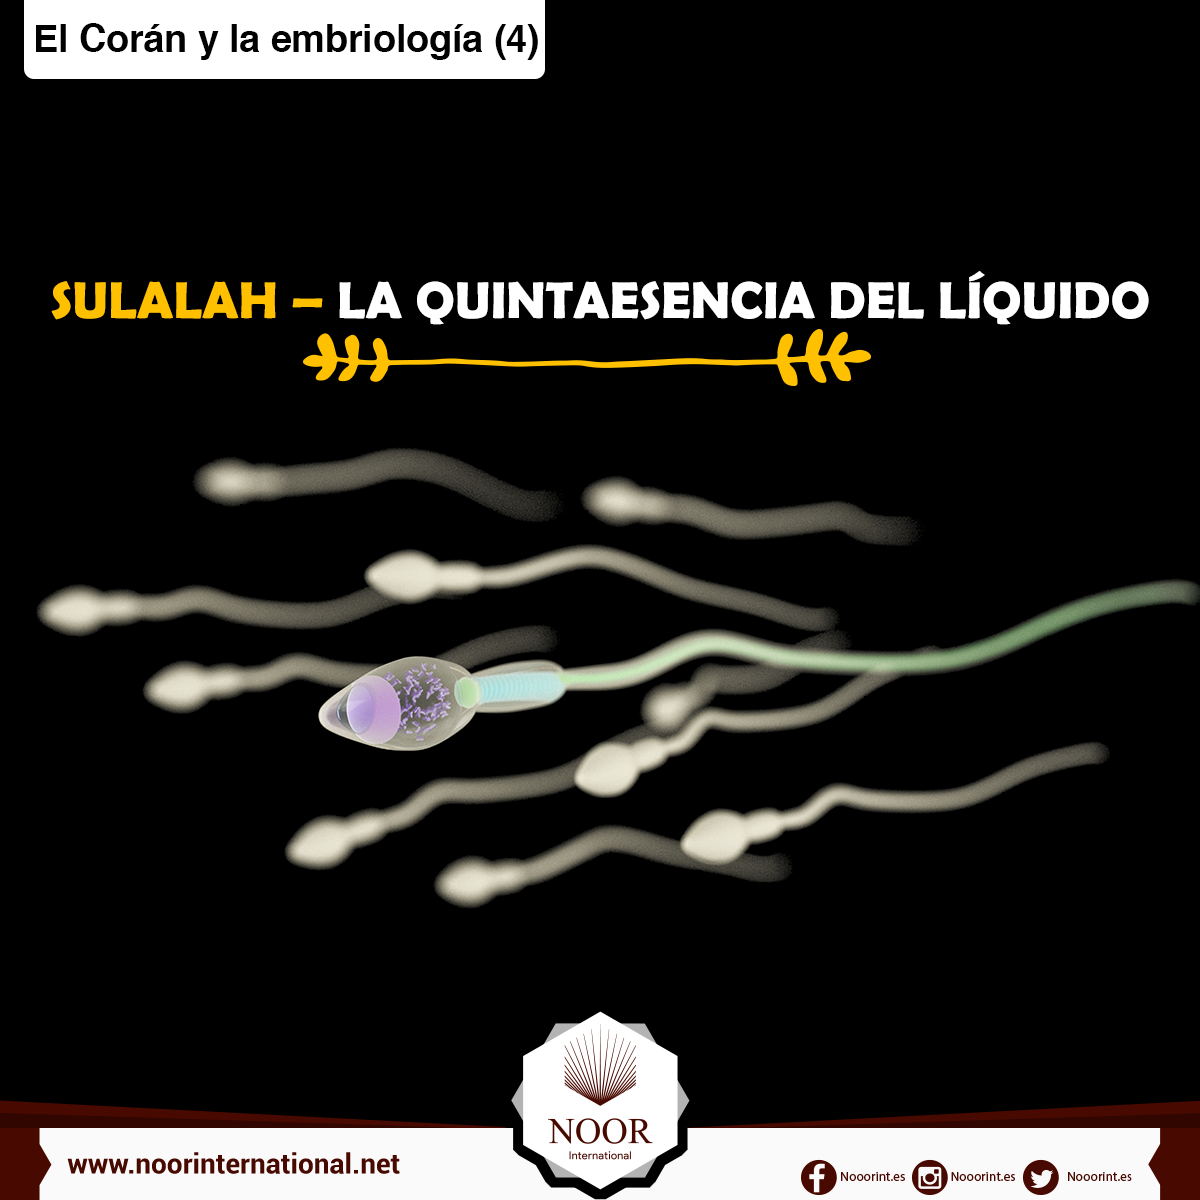 El Corán y la embriología: Sulalah, la quintaesencia del líquido